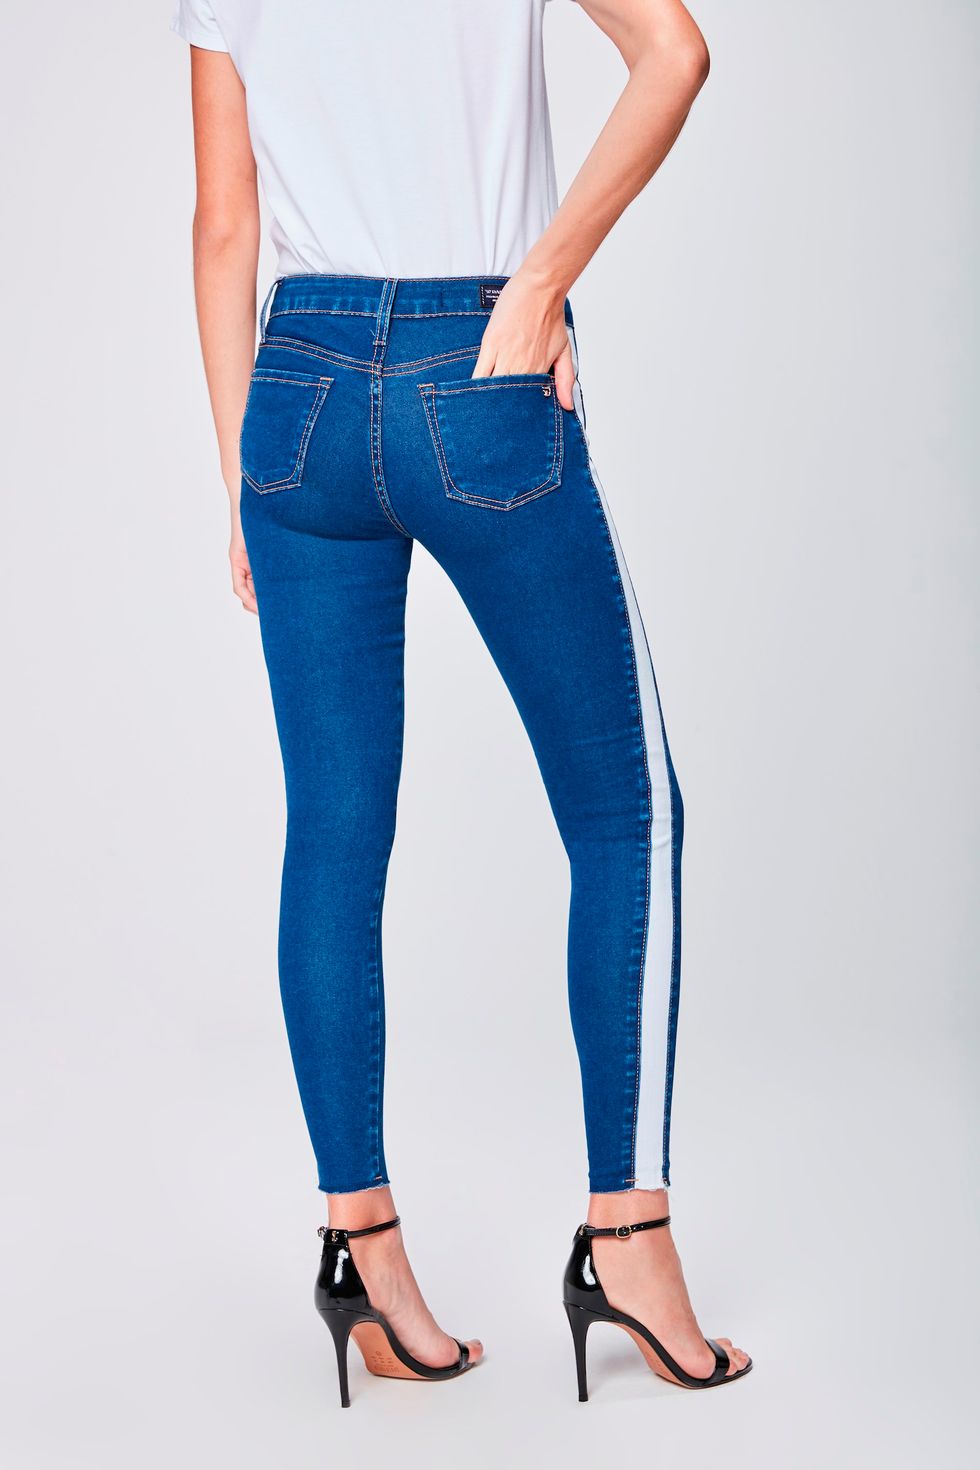 comprar calca jeans feminina